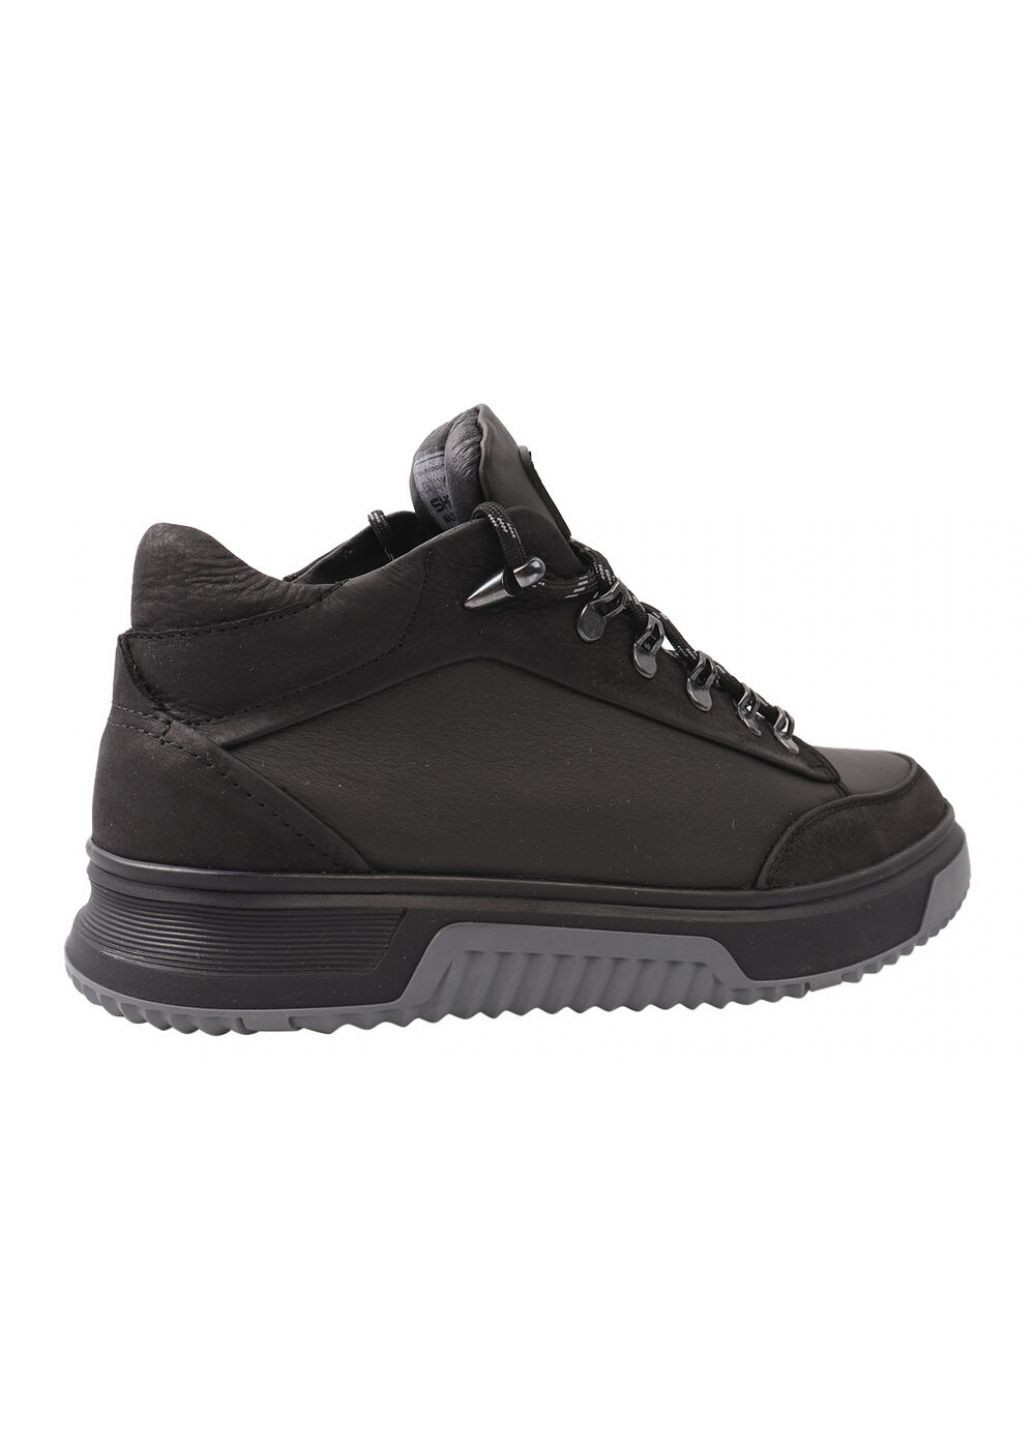 Черные ботинки женские из натуральной кожи,черные,украина Shark 65-9/21ZHC